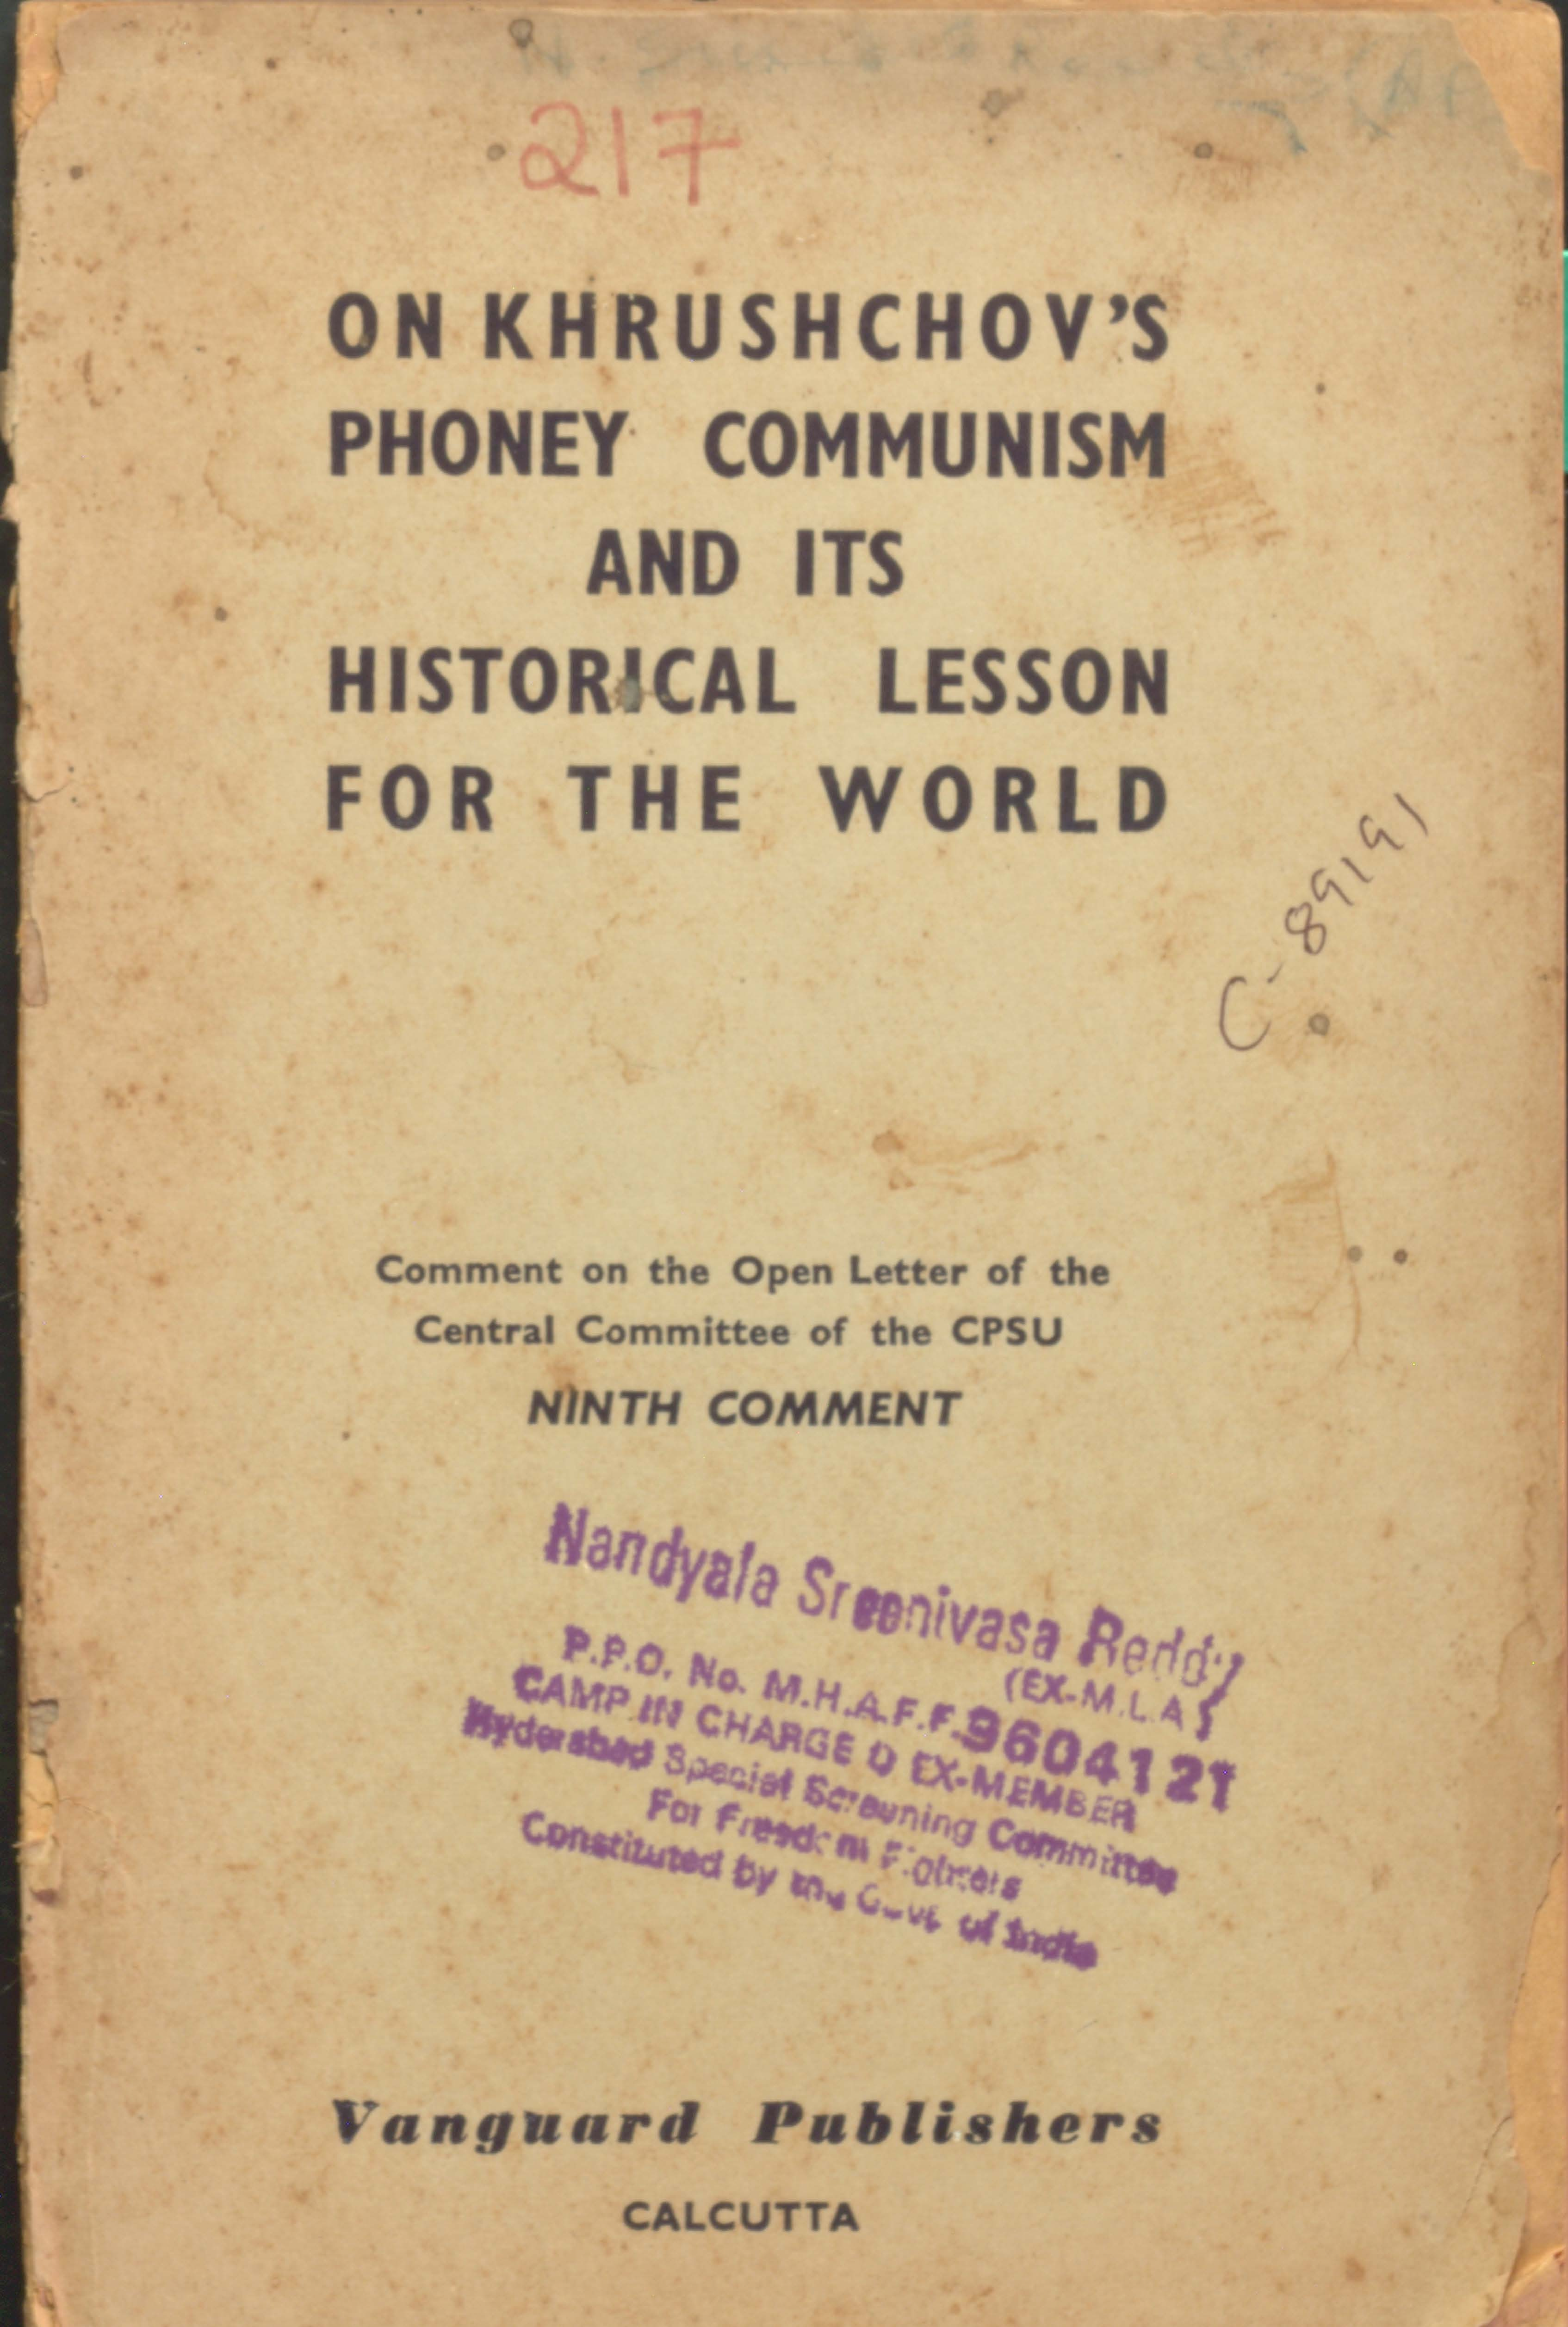 On Khrushovs Phoney Communism historical lesson for the world